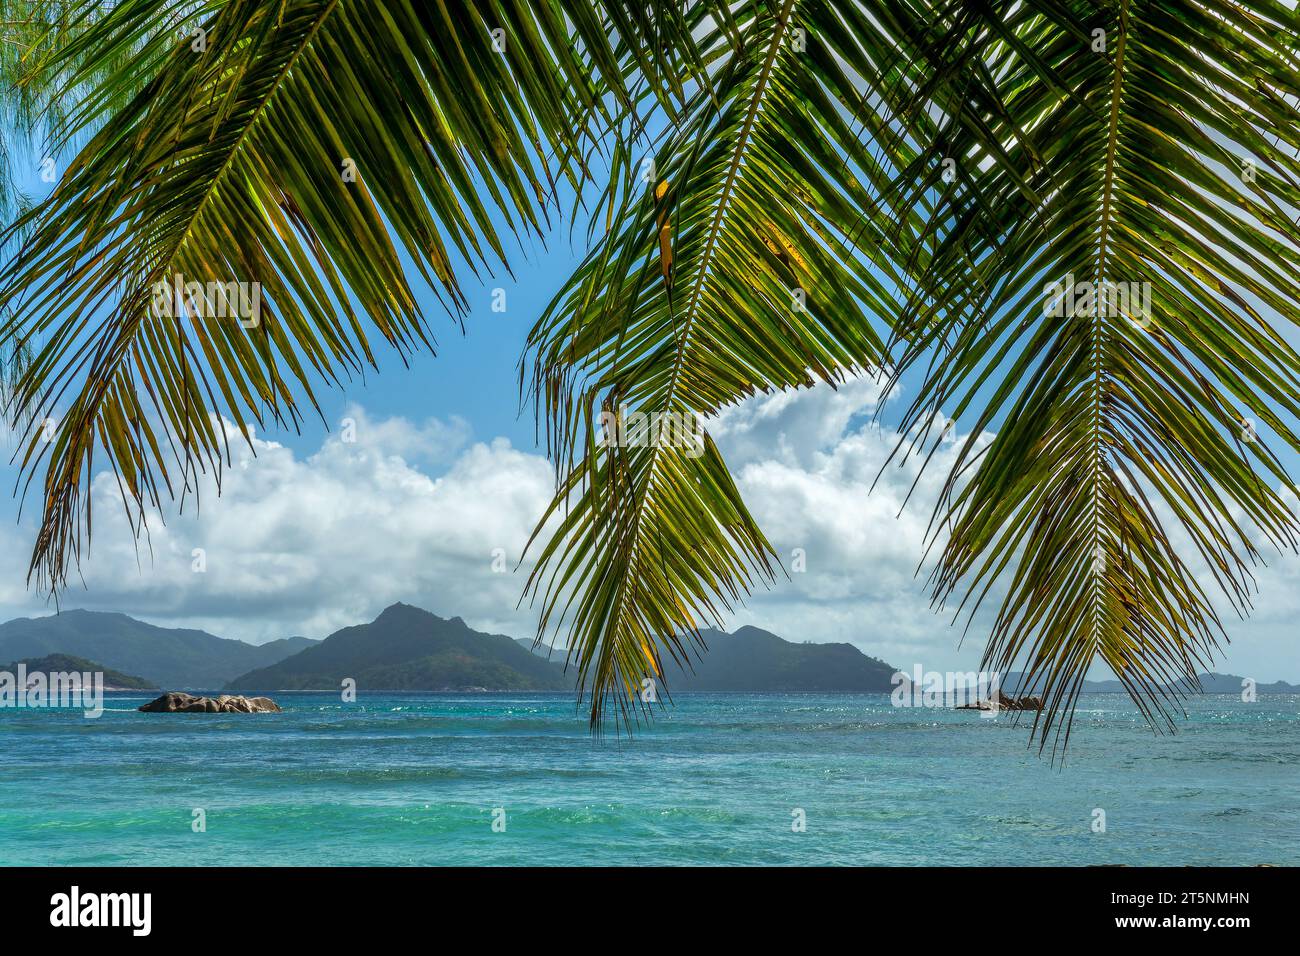 Palmiers et vue sur l'île de Praslin depuis la Digue, Seychelles Banque D'Images